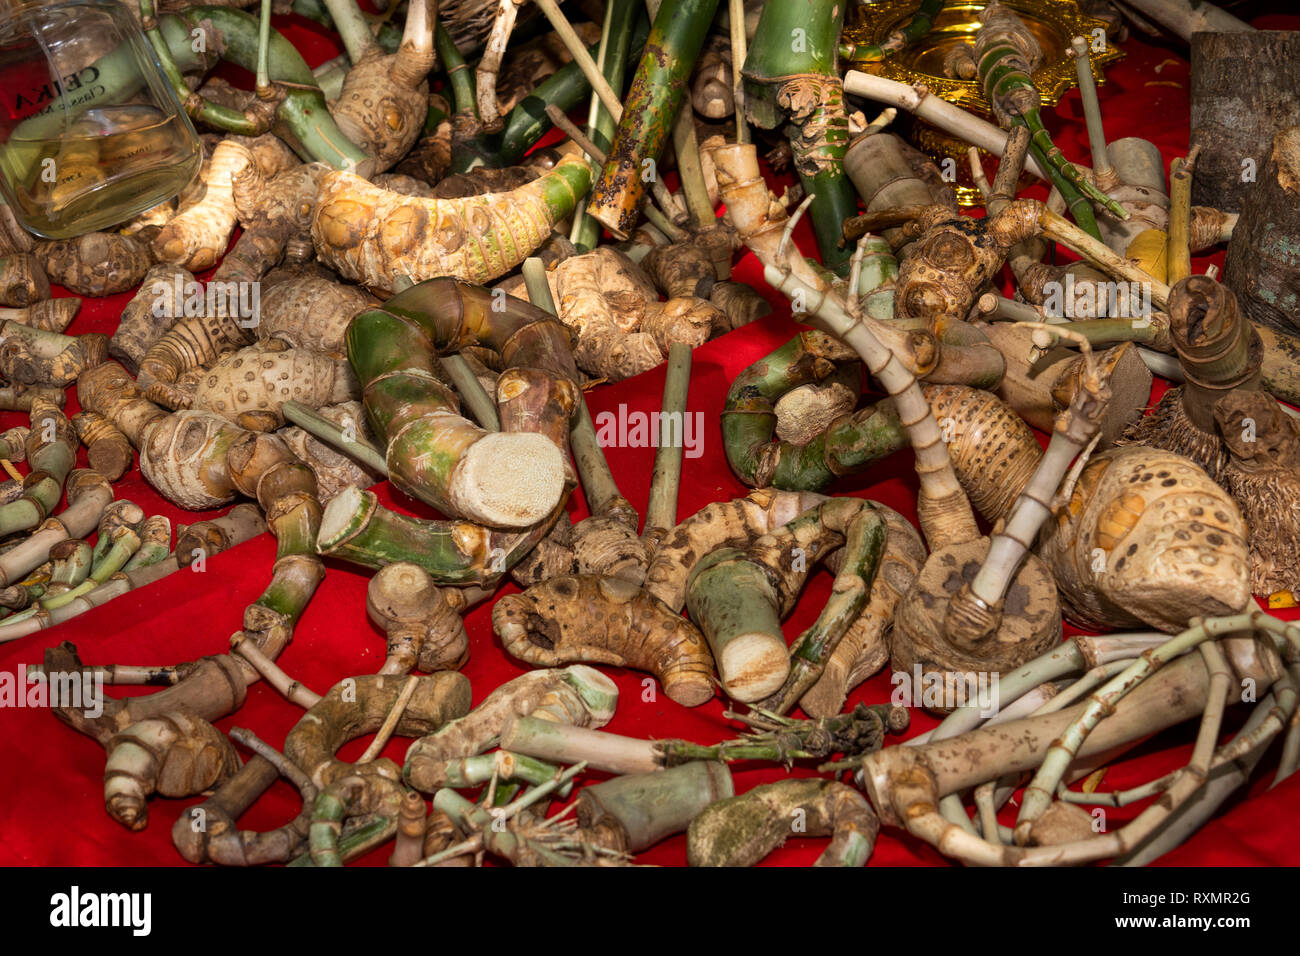 Camboya, Phnom Penh, Oudong, raíces y plantas medicinales muestran a vender a los visitantes Foto de stock